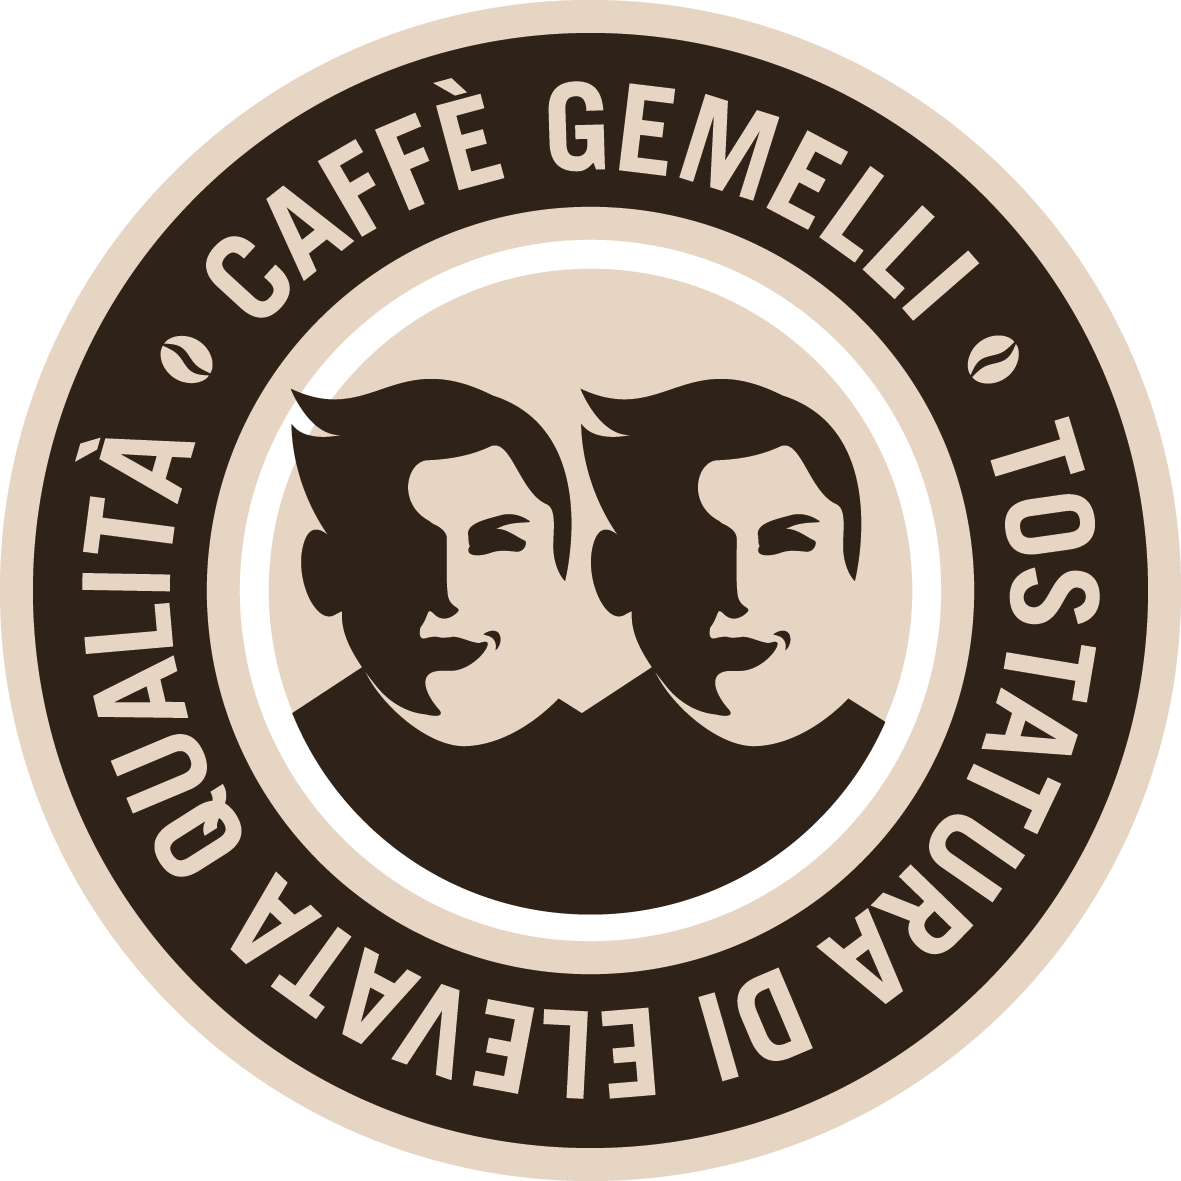 Caffe-GEMELLI_Logo_4C